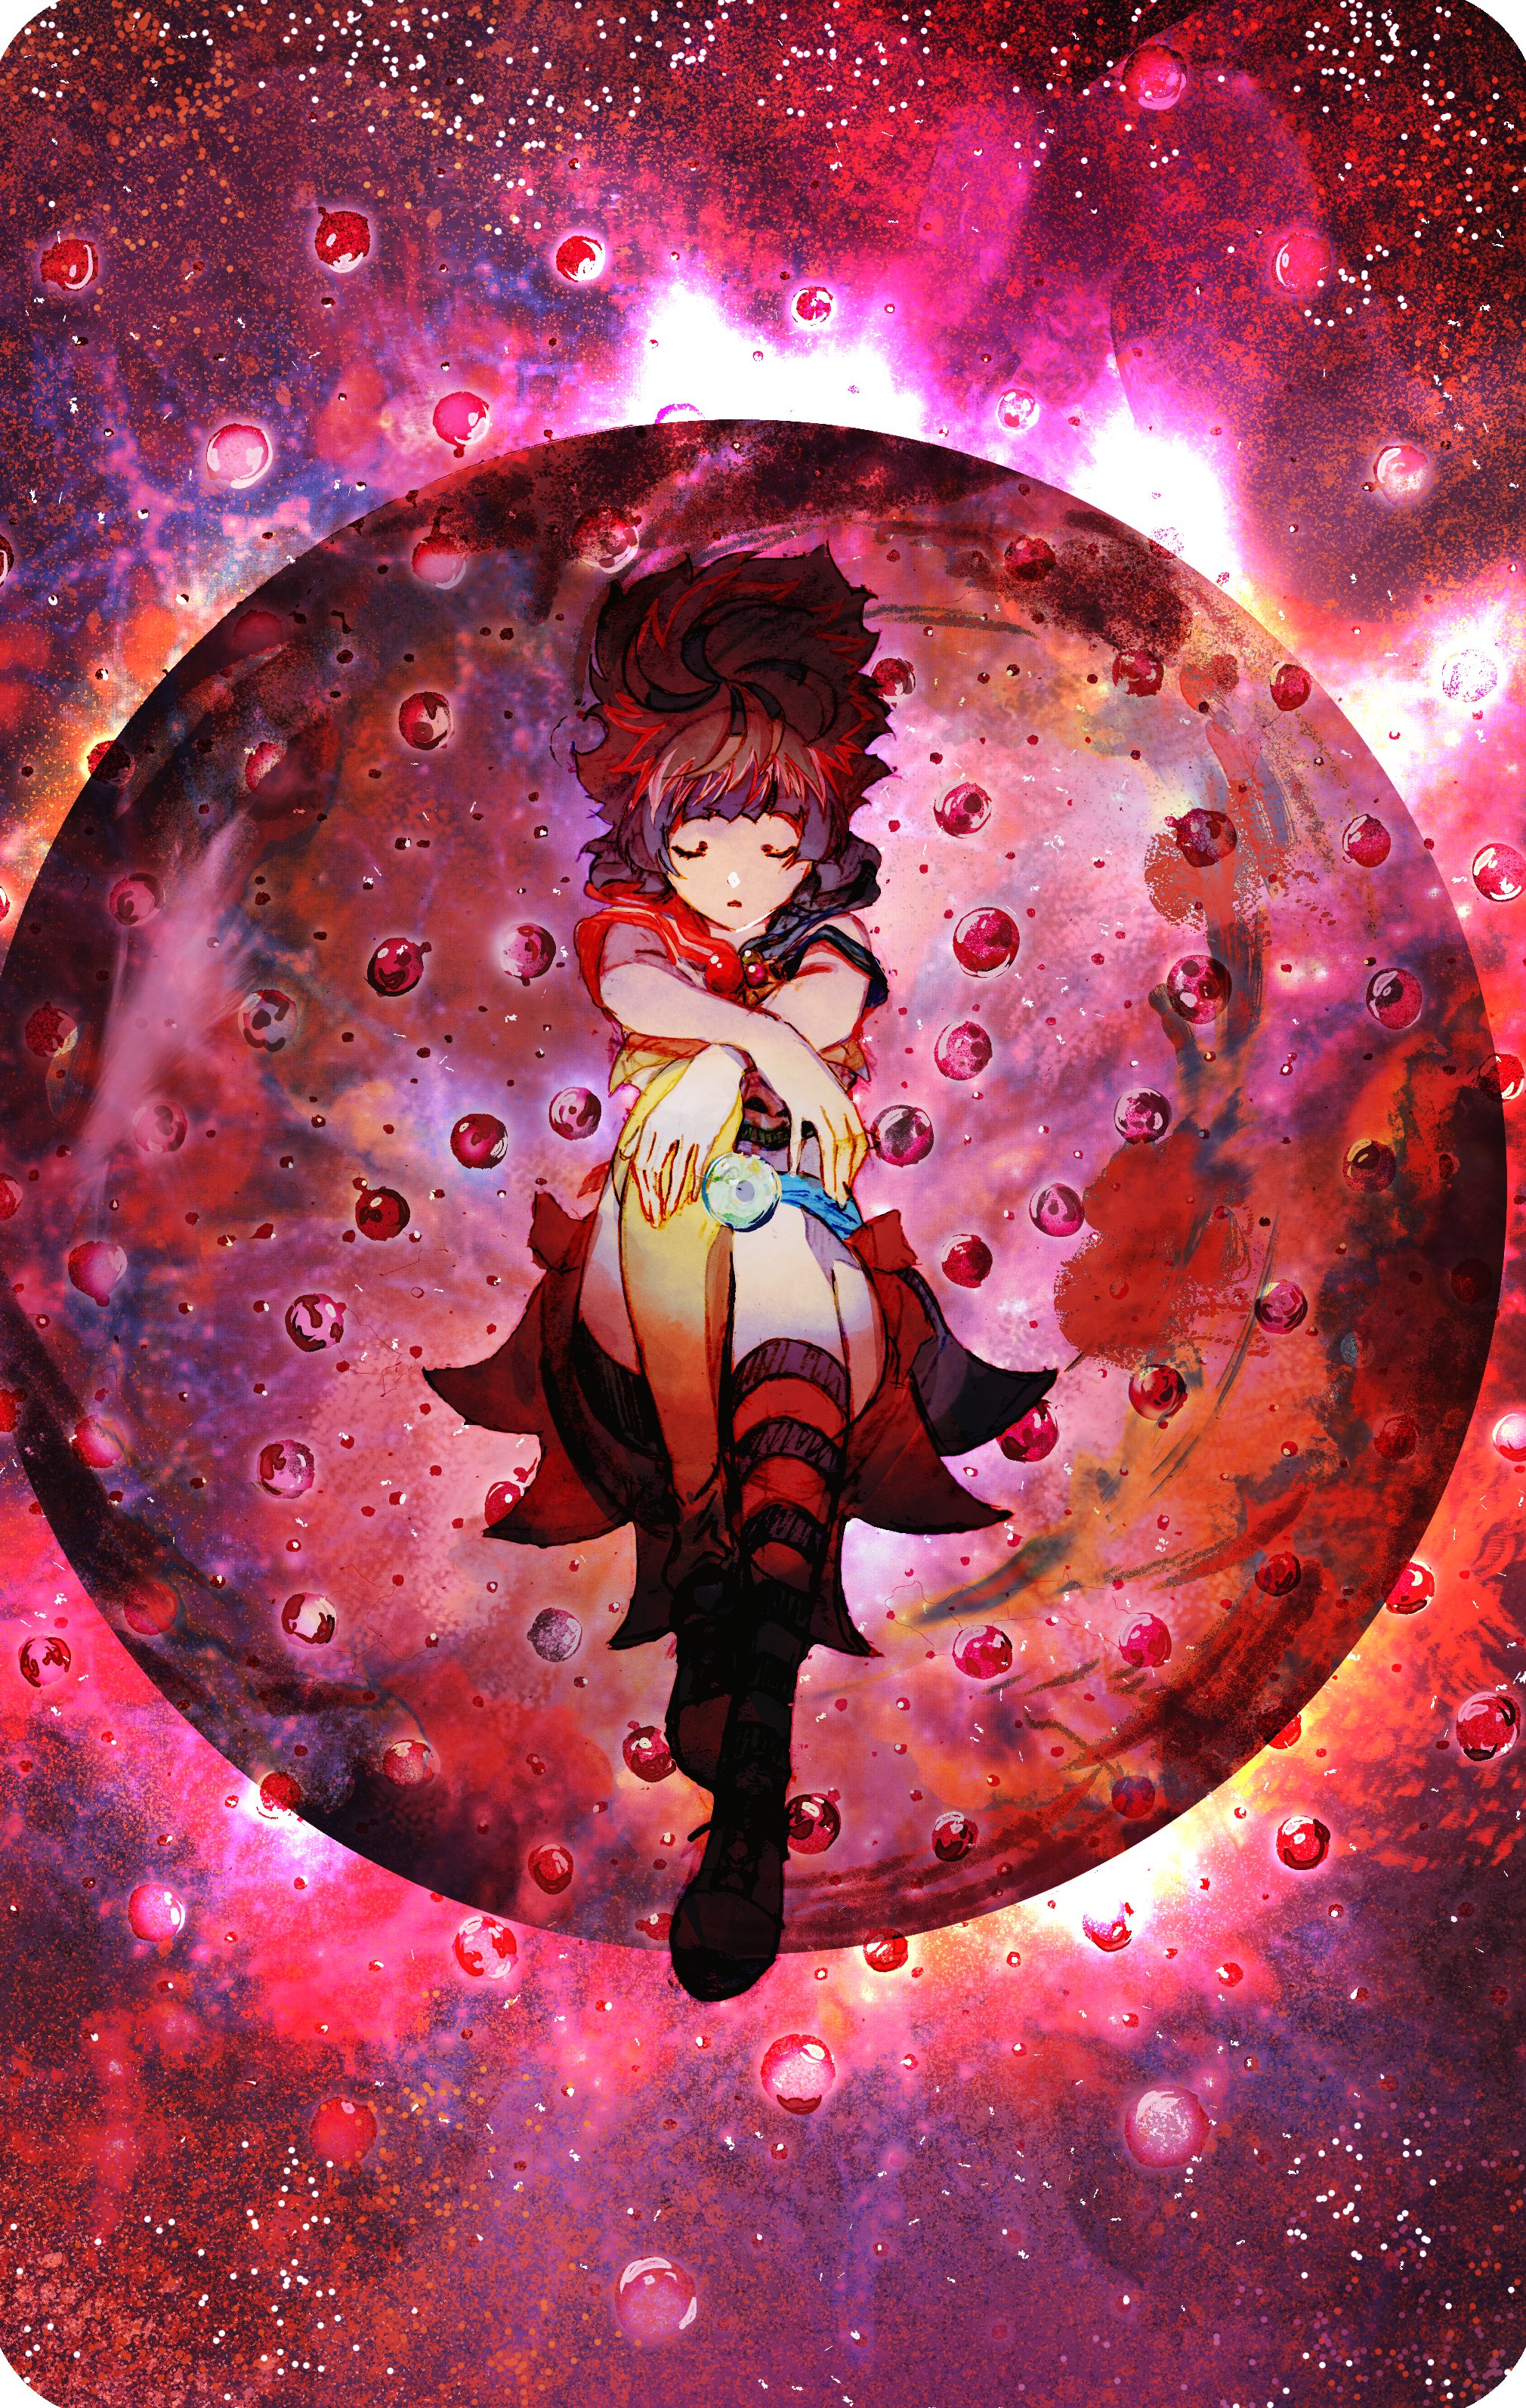 Bubble (Movie) Anime Image Board